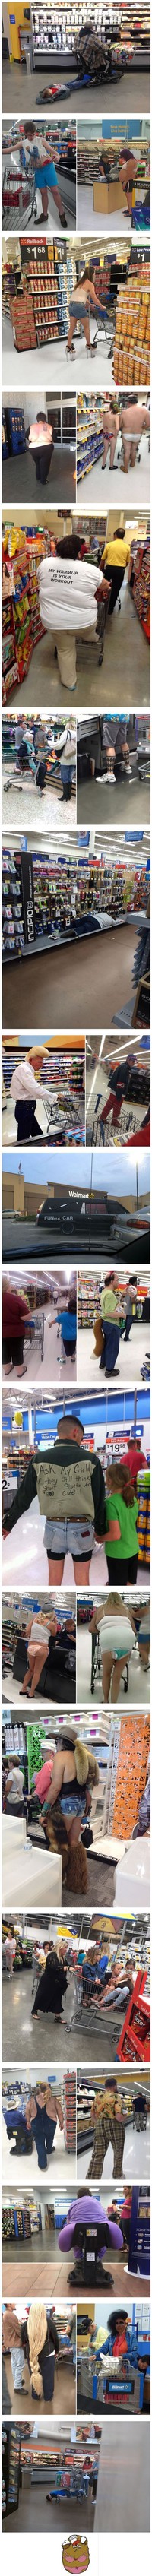 Les gens de Walmart